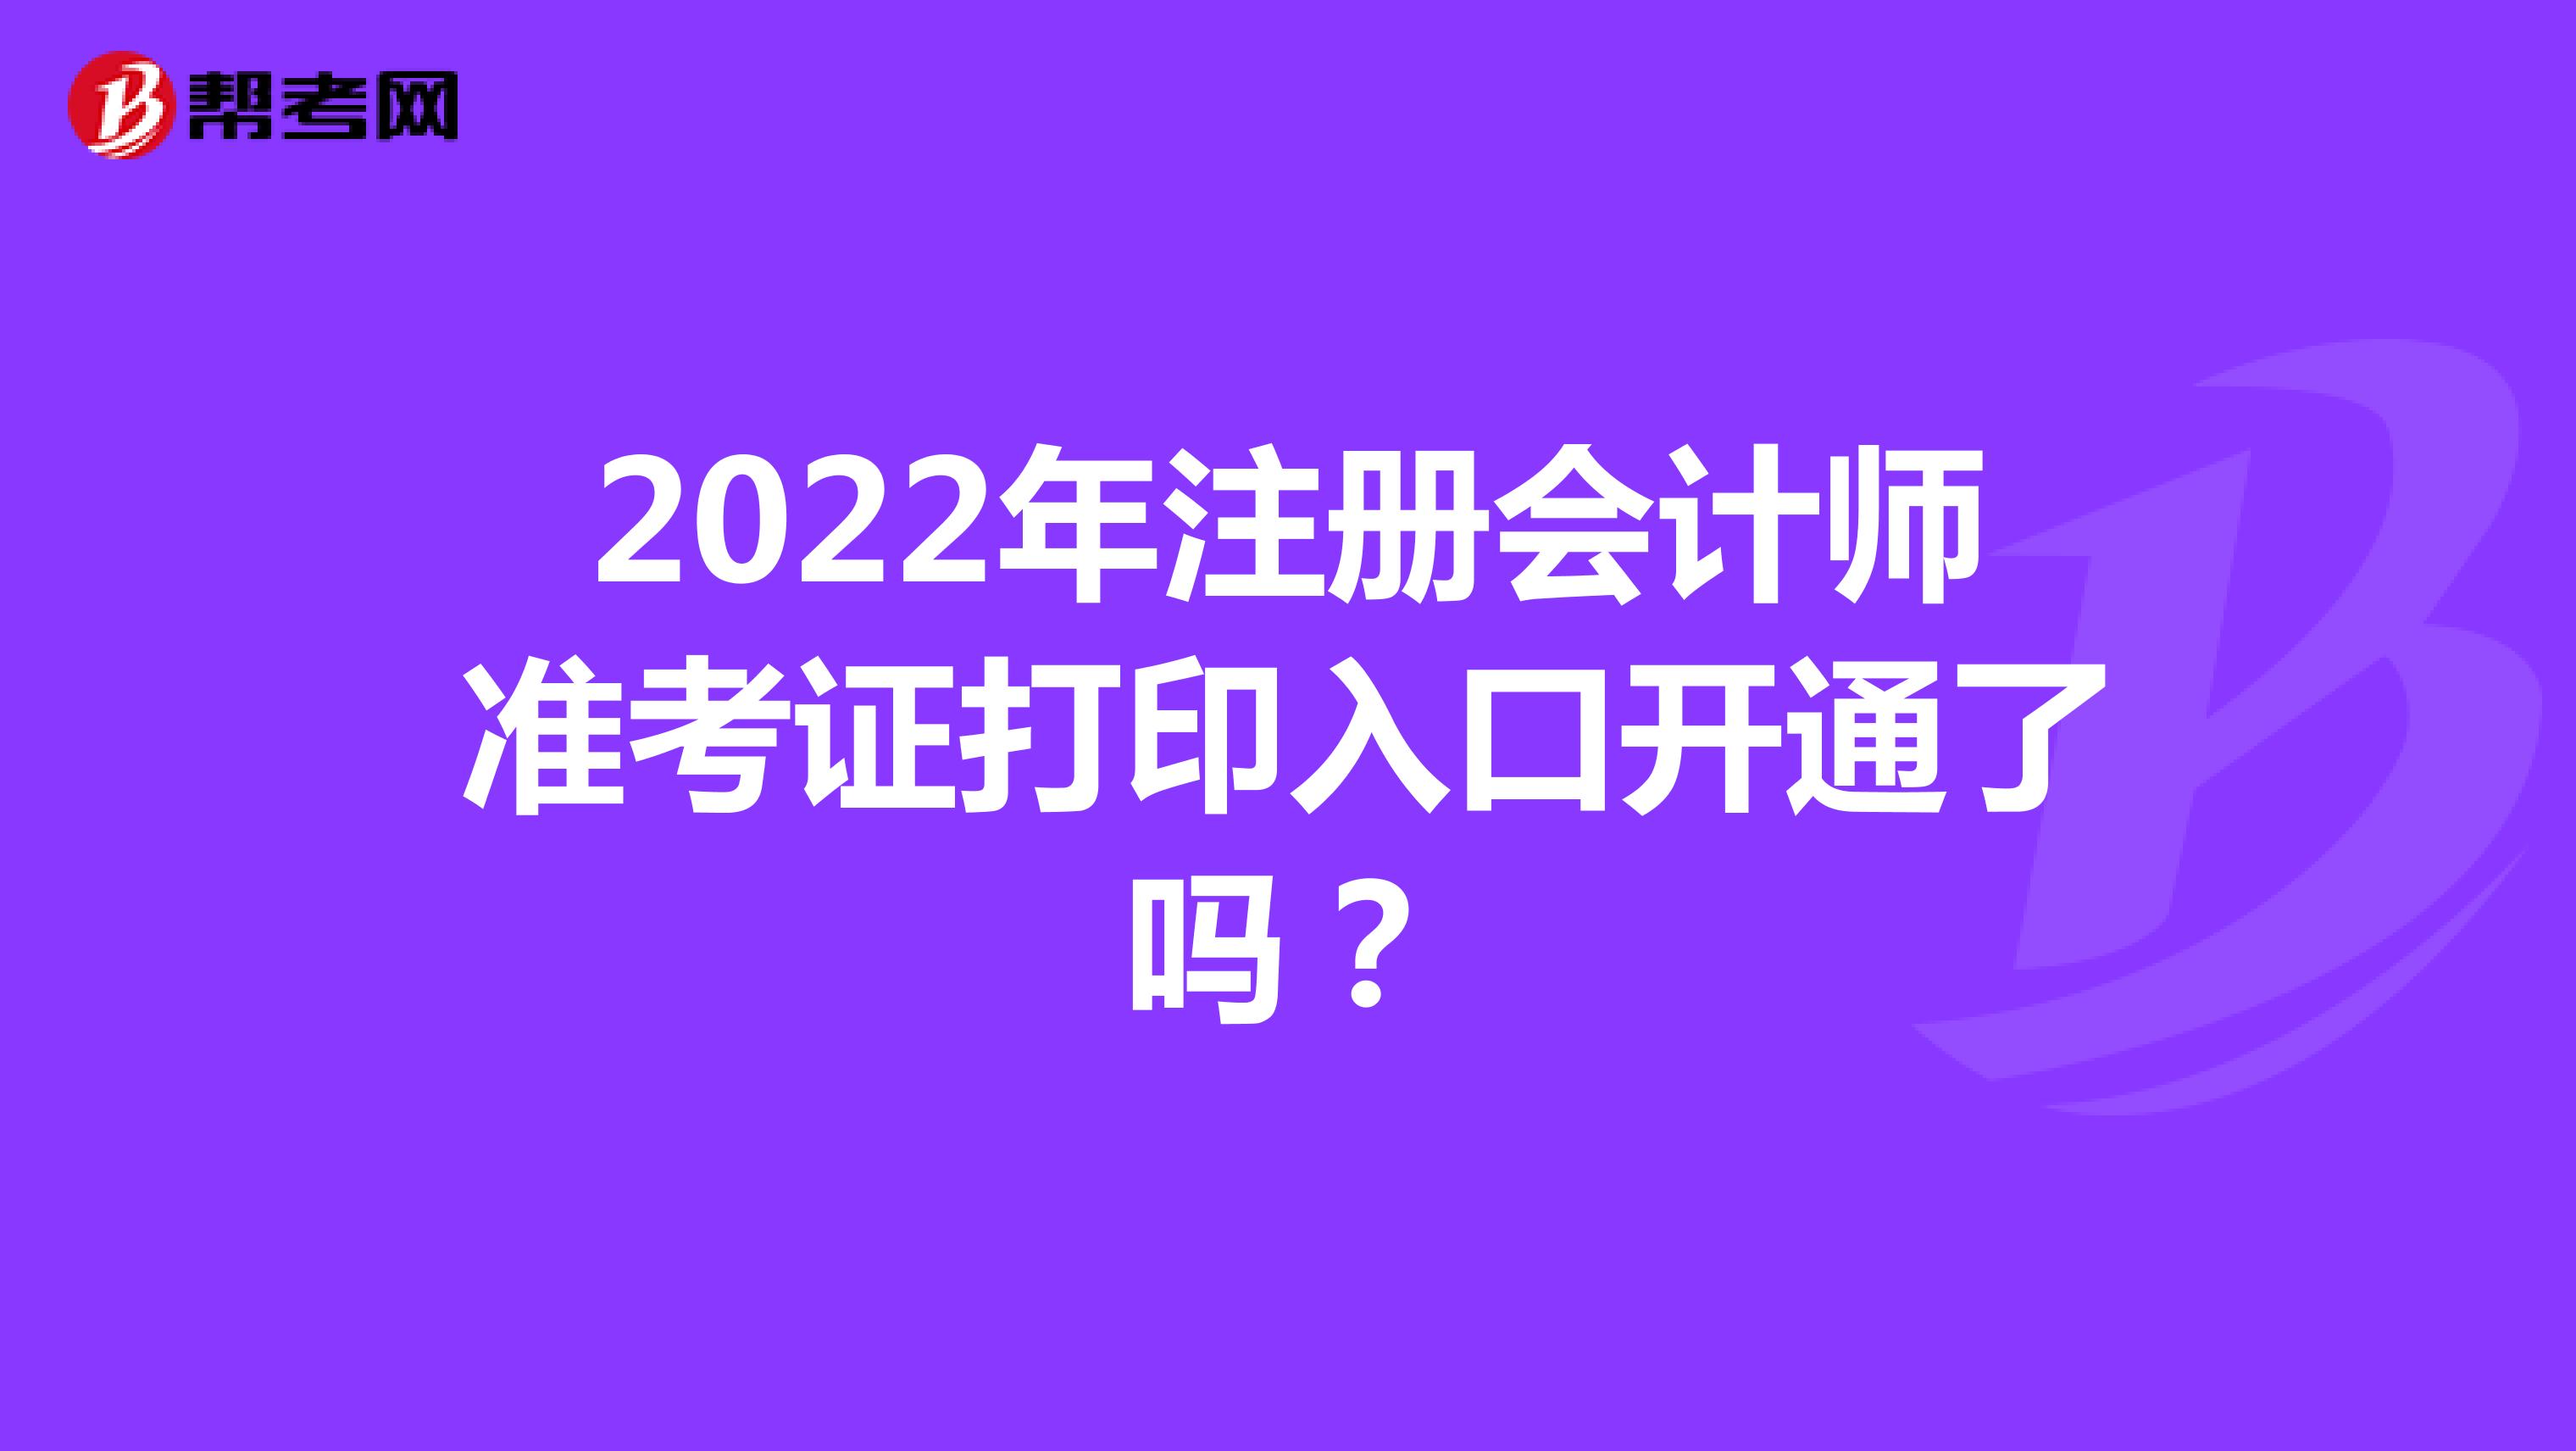 2022年注册会计师准考证打印入口开通了吗？